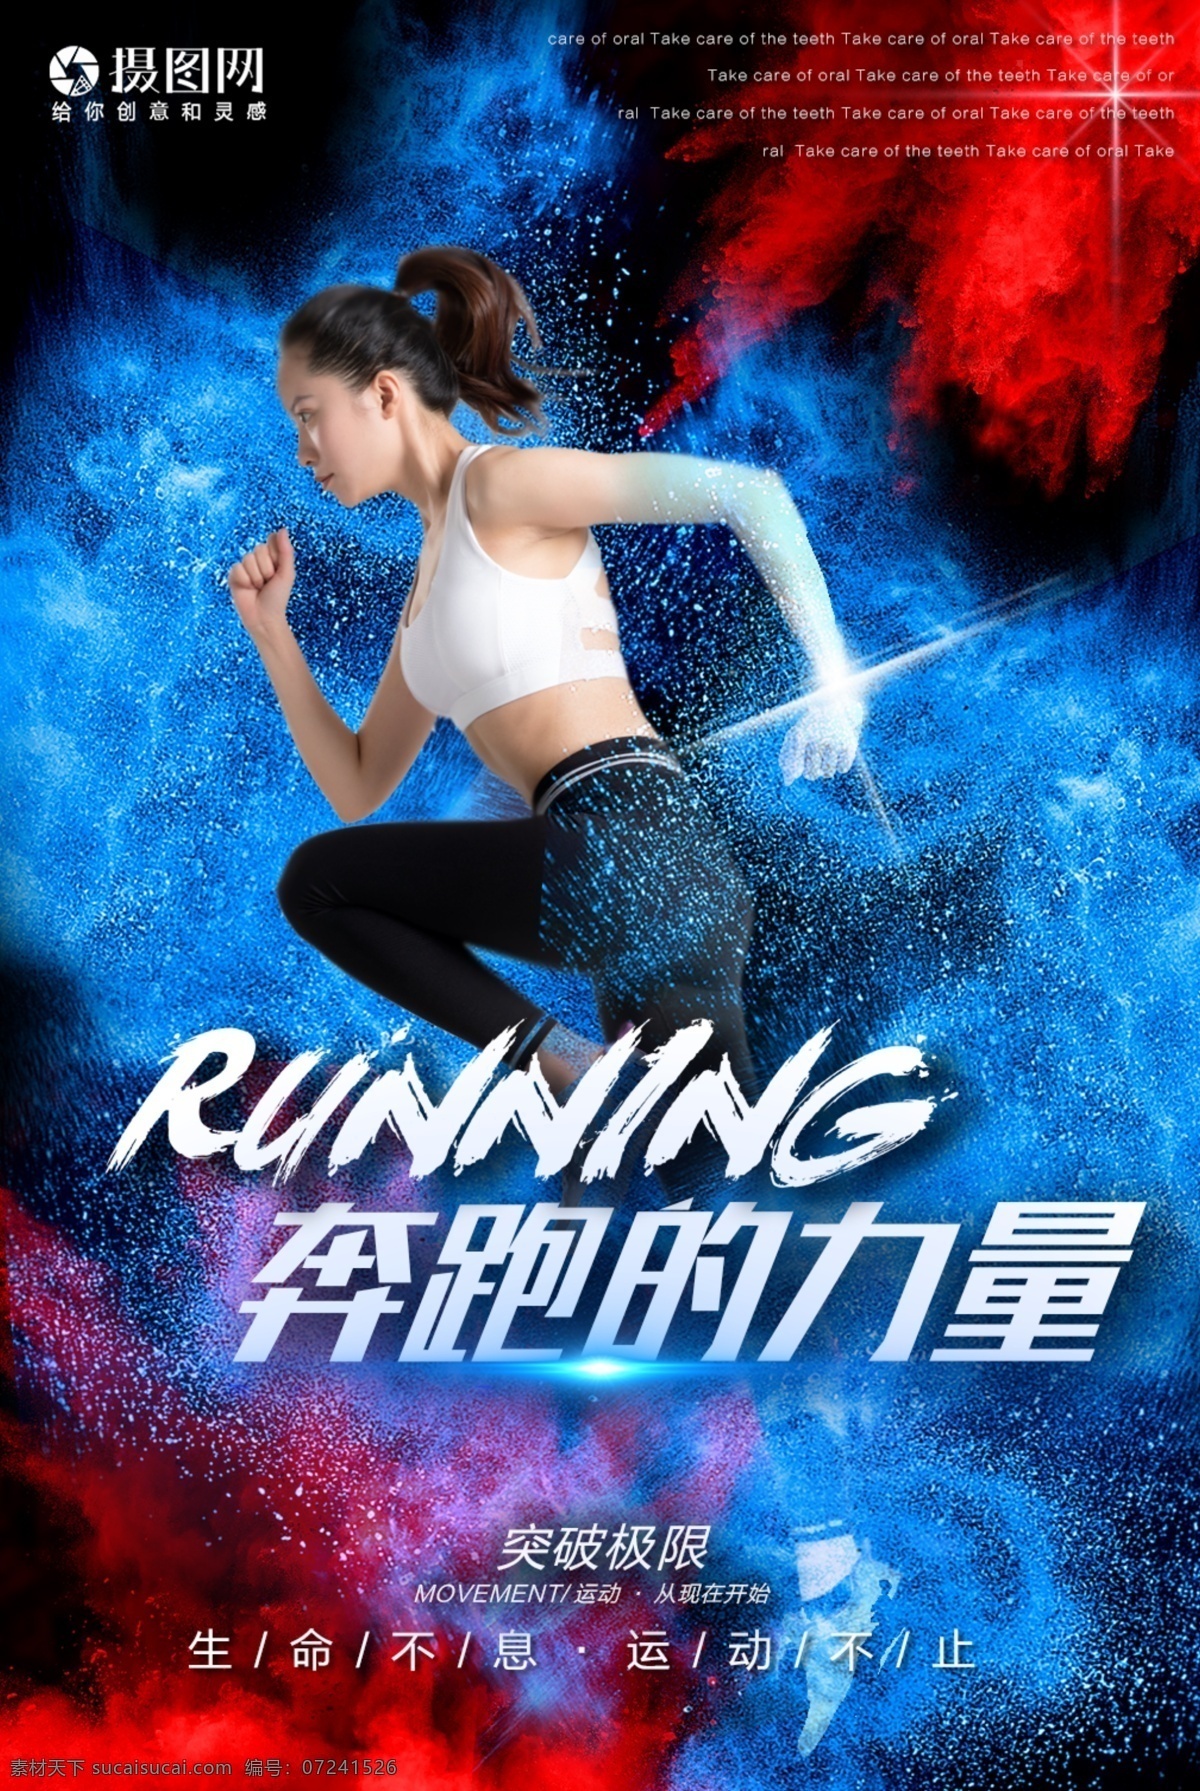 奔跑 力量 运动 海报 健身 跑步 喷溅 运动员 瘦身 奔跑的力量 色彩